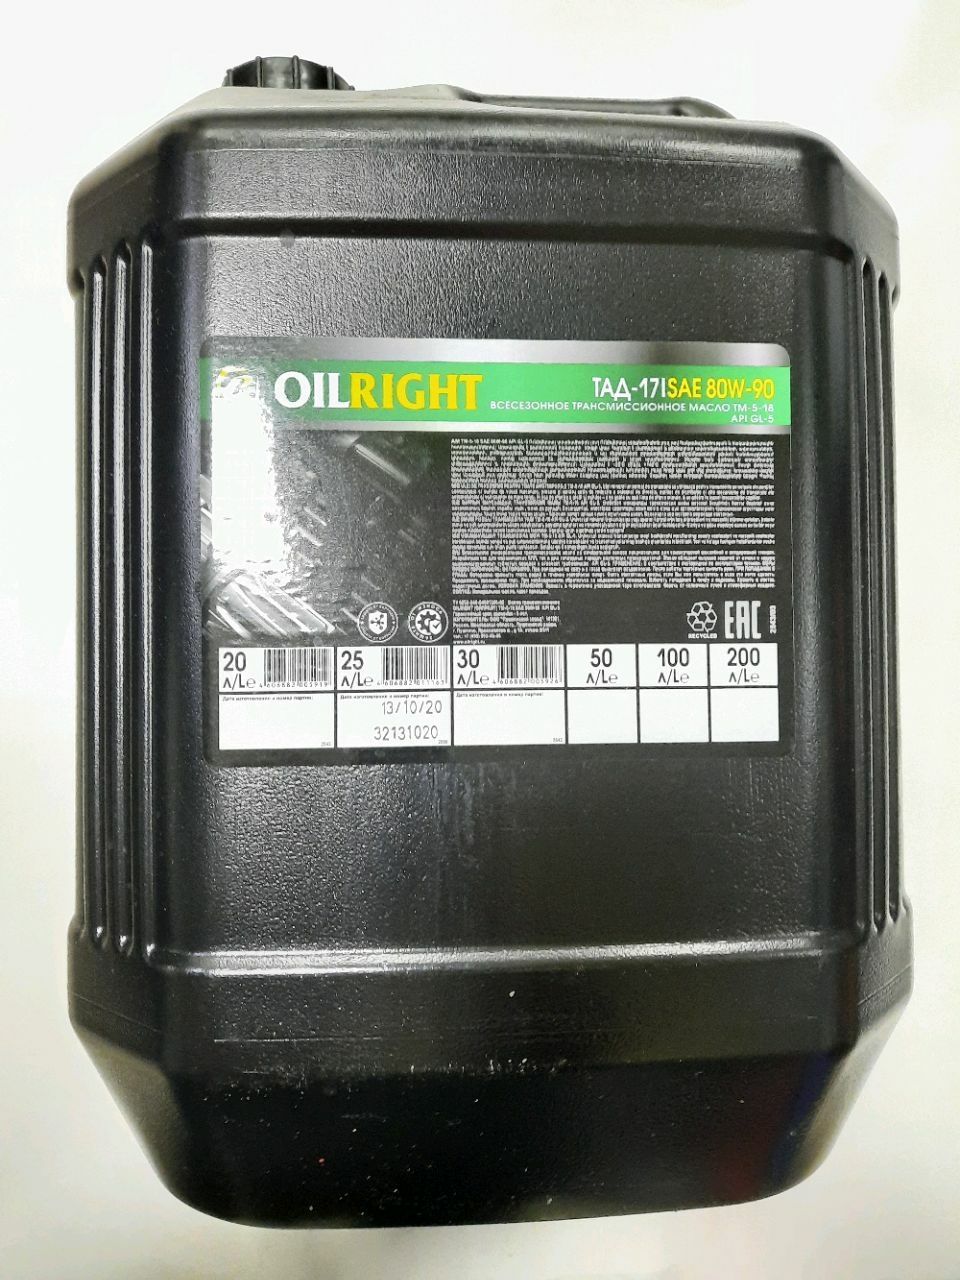 Ulei p/u transm. TAD-17 Oil Right 25L.